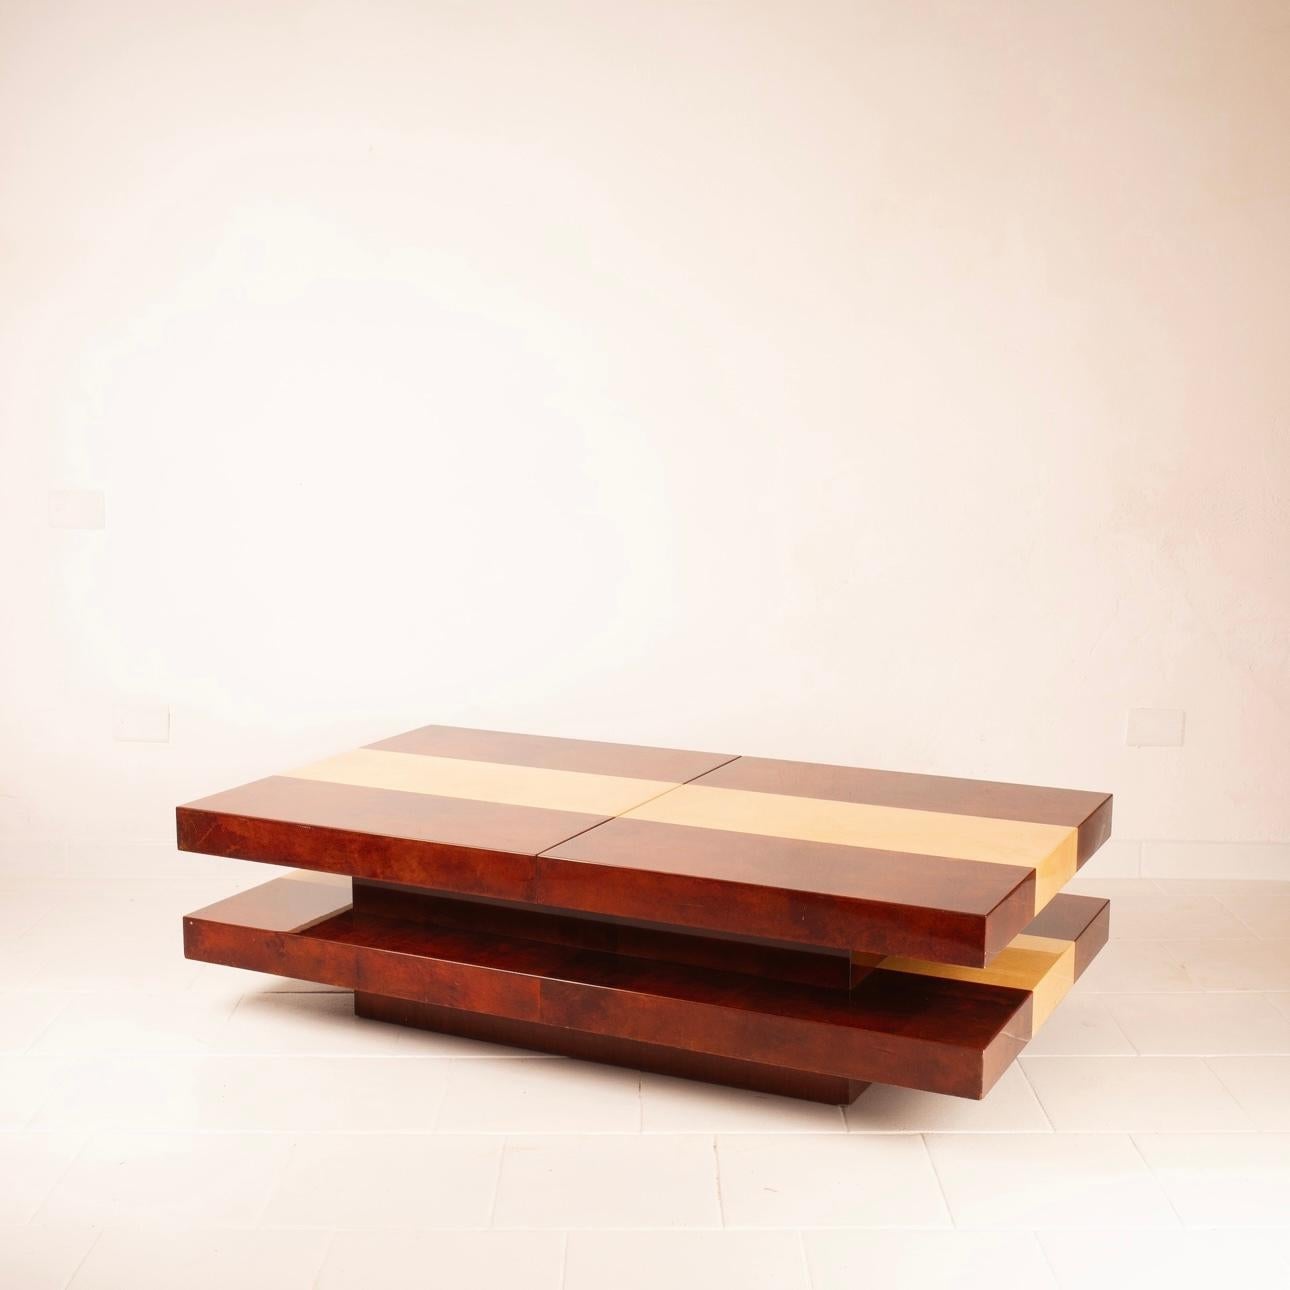 Découvrez notre extraordinaire table basse en parchemin, un authentique chef-d'œuvre de design des années 1960 créé par le célèbre artisan et artiste lombard Aldo Tura.
Cette table basse se distingue par son design impressionnant, dont le plateau